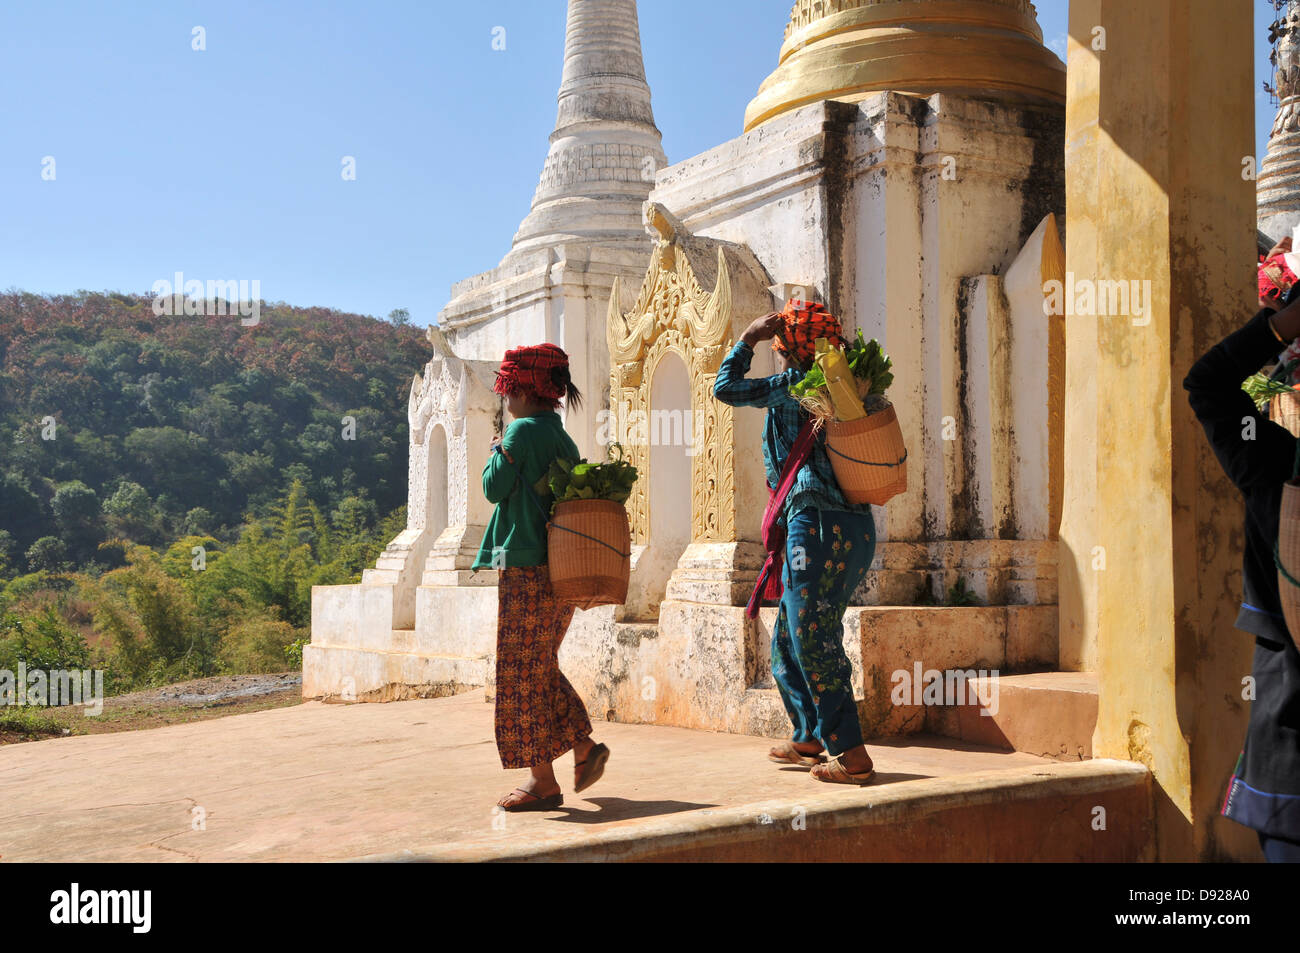 Pa-O les femmes revenant du marché en face de stupas de Thaung Tho Pagode Kyaung, lac Inle, l'État de Shan, Myanmar Banque D'Images